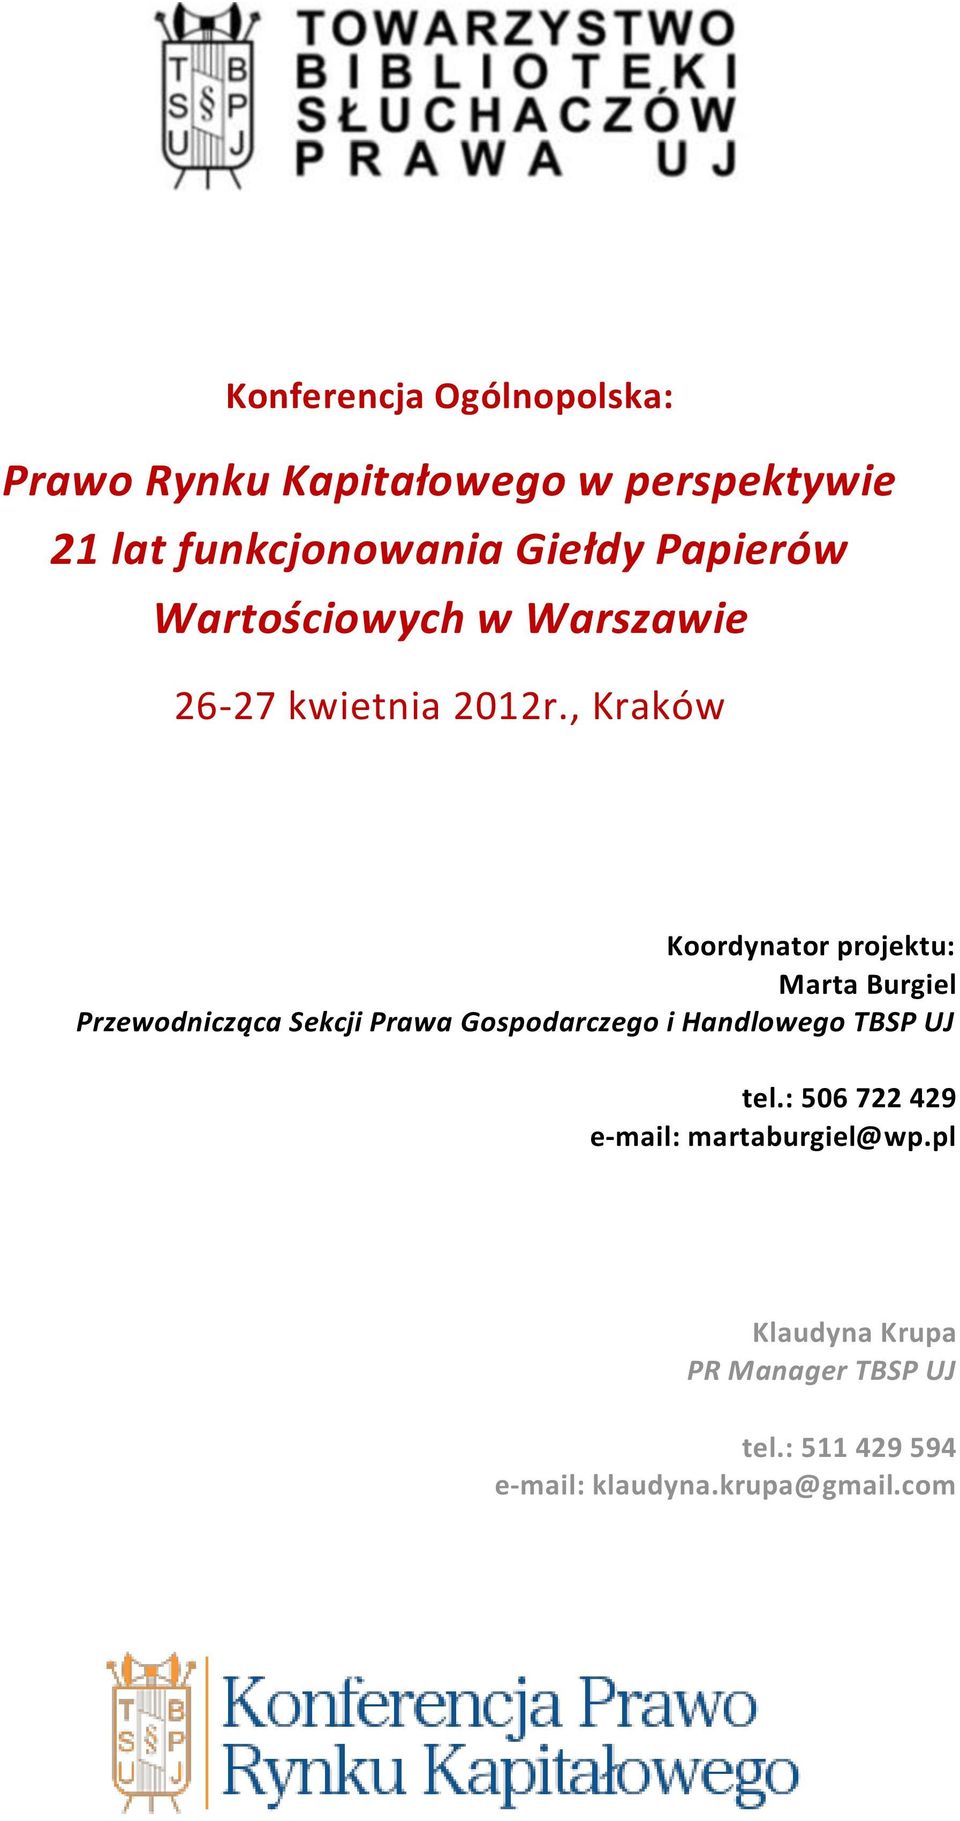 , Kraków Koordynator projektu: Marta Burgiel Przewodnicząca Sekcji Prawa Gospodarczego i